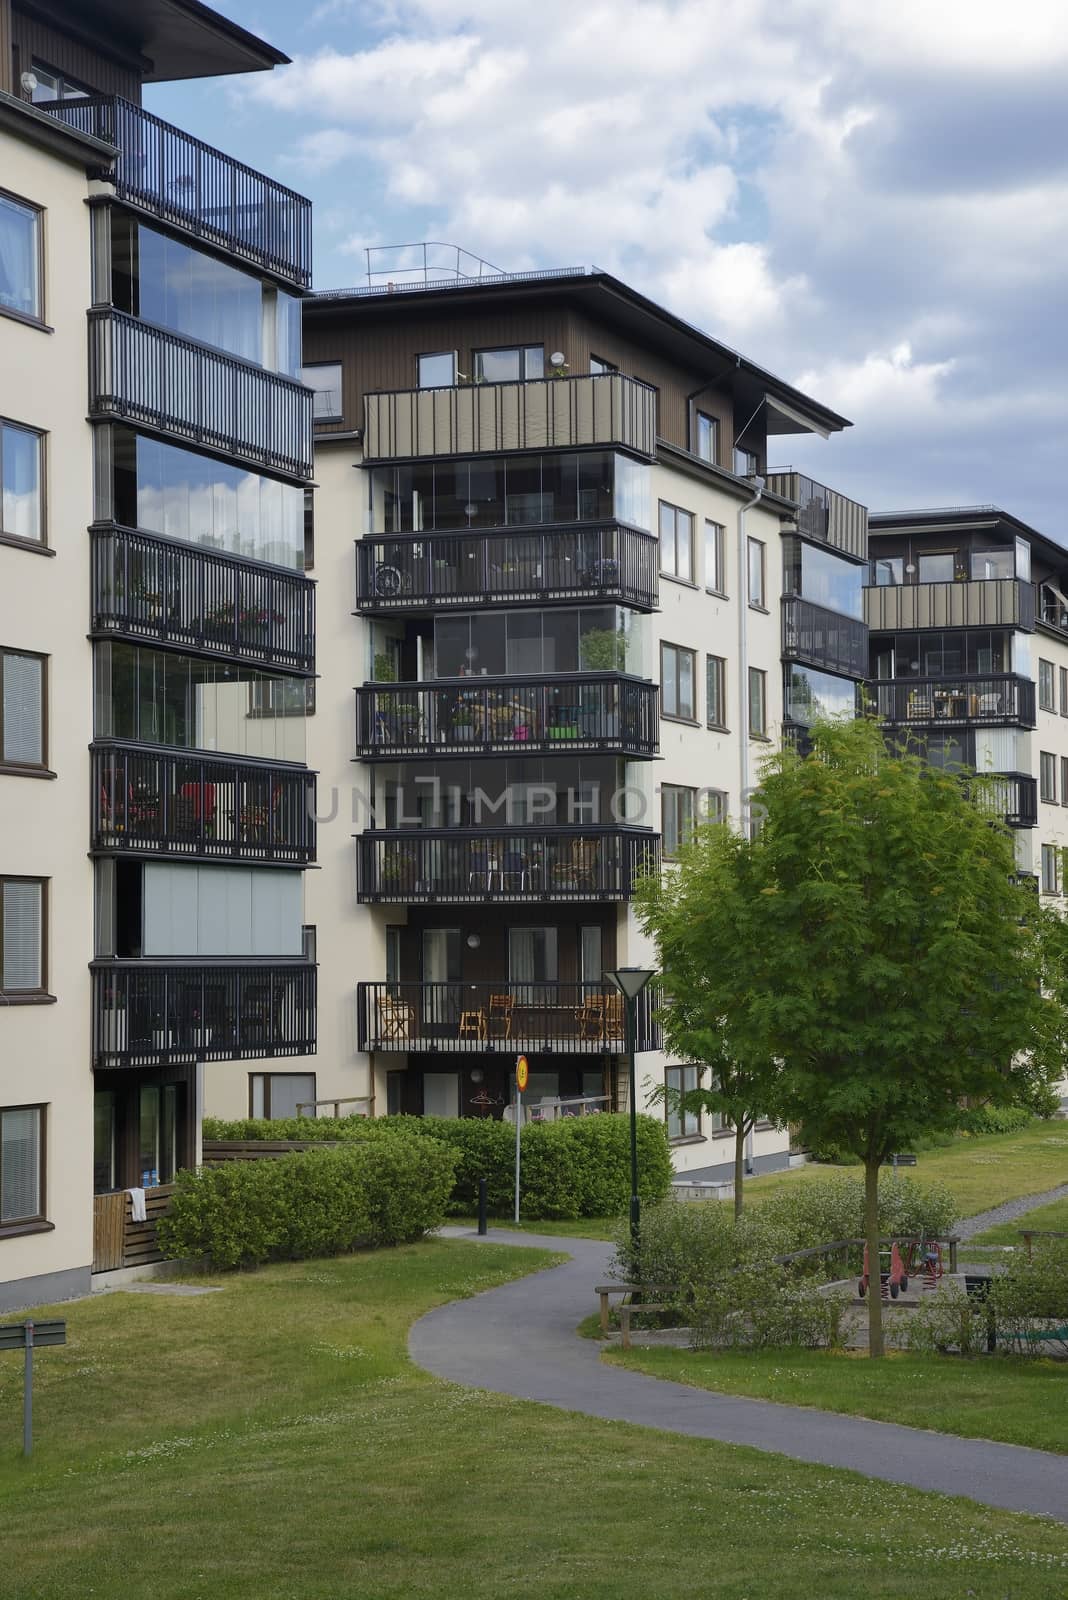 Swedish Apartment Block in summer.